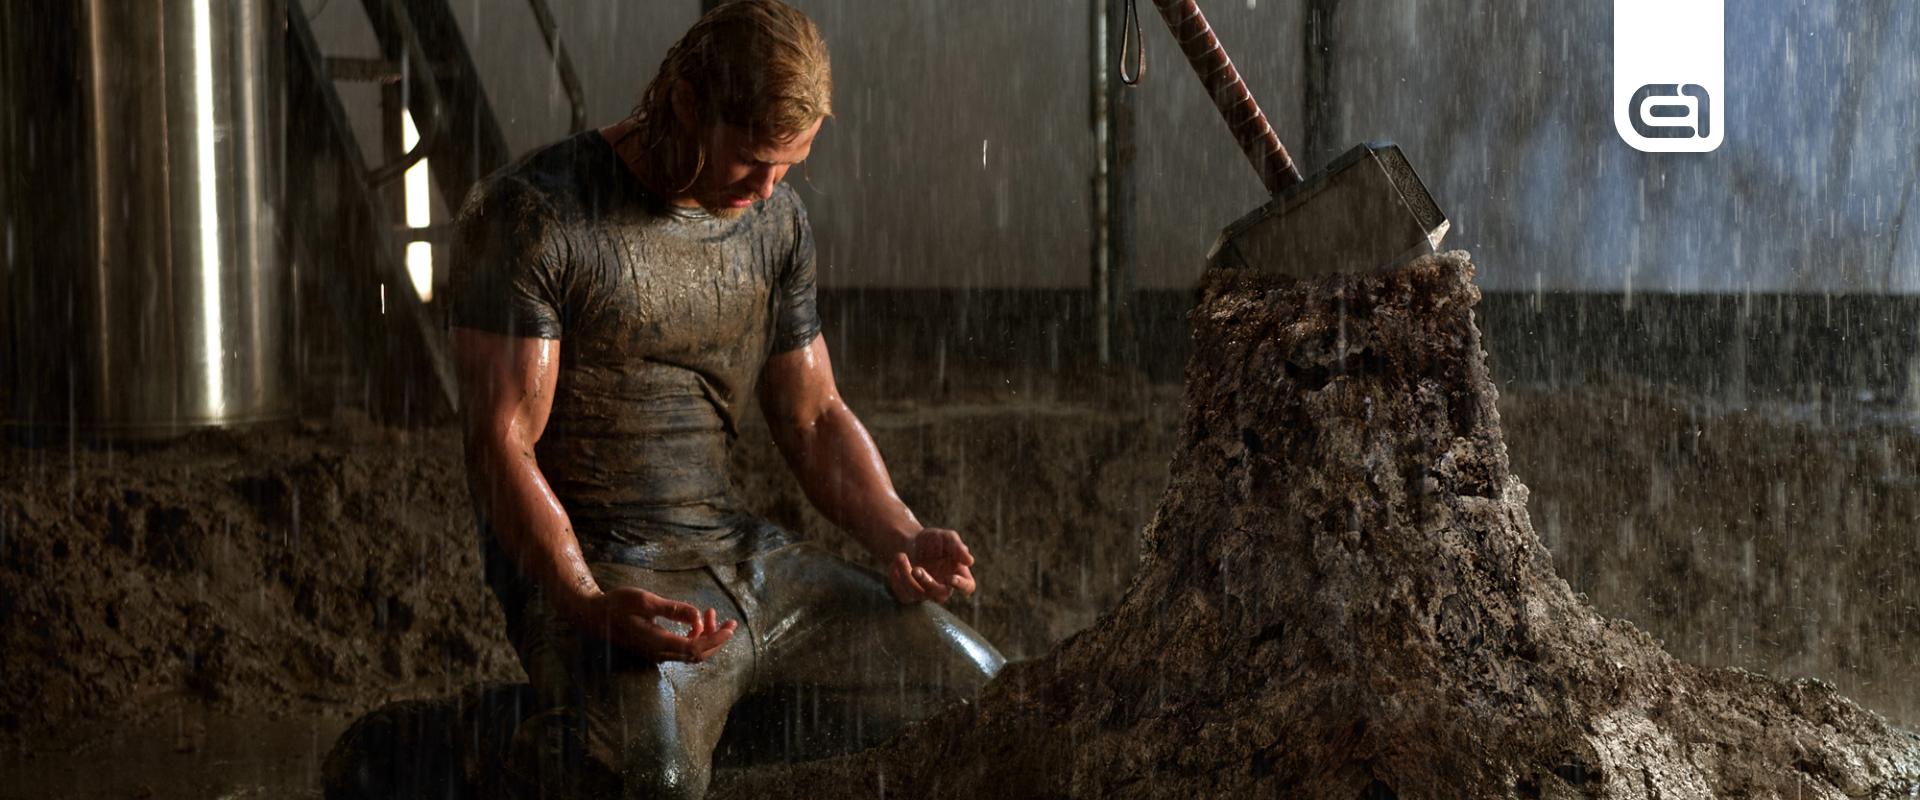 Chris Hemsworth nem biztos, hogy visszatér Thorként a jövőben